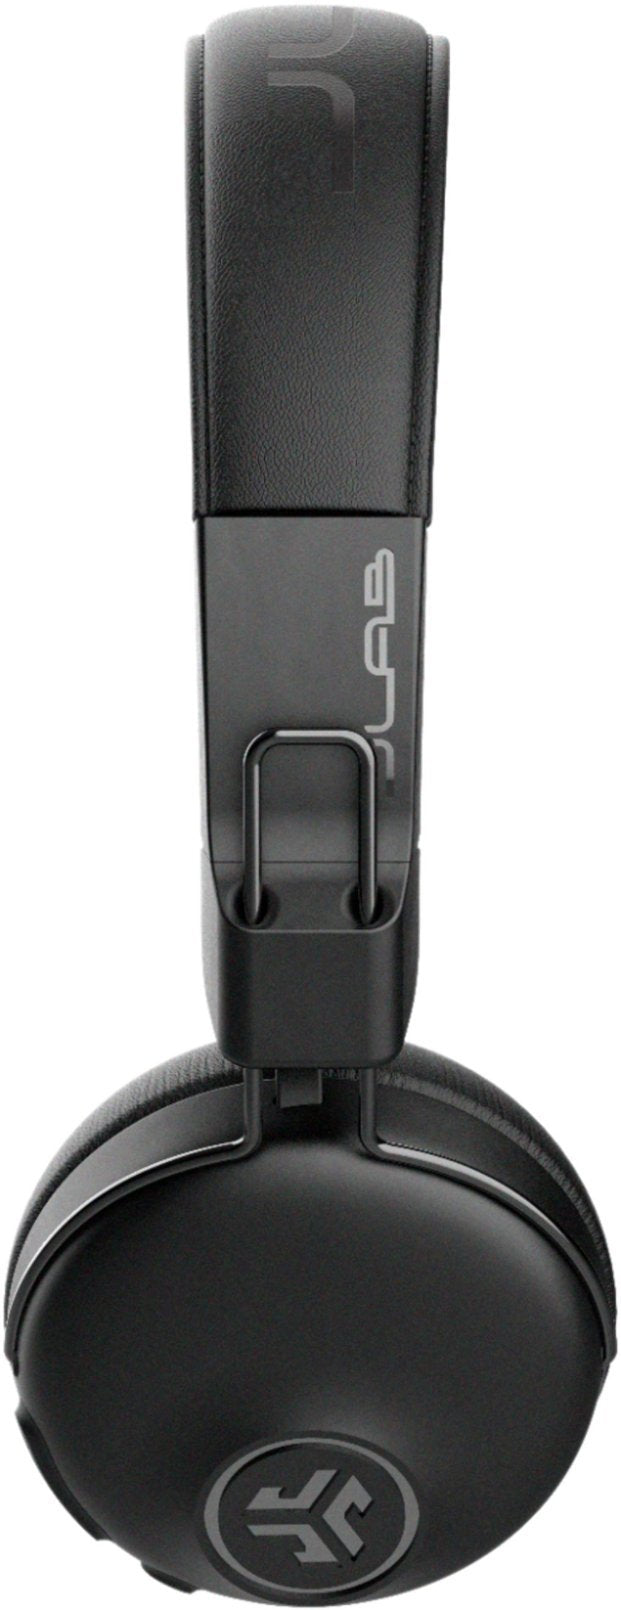 //// JLab | Studio ANC On-Ear Bluetooth Headphones Black 105-1611